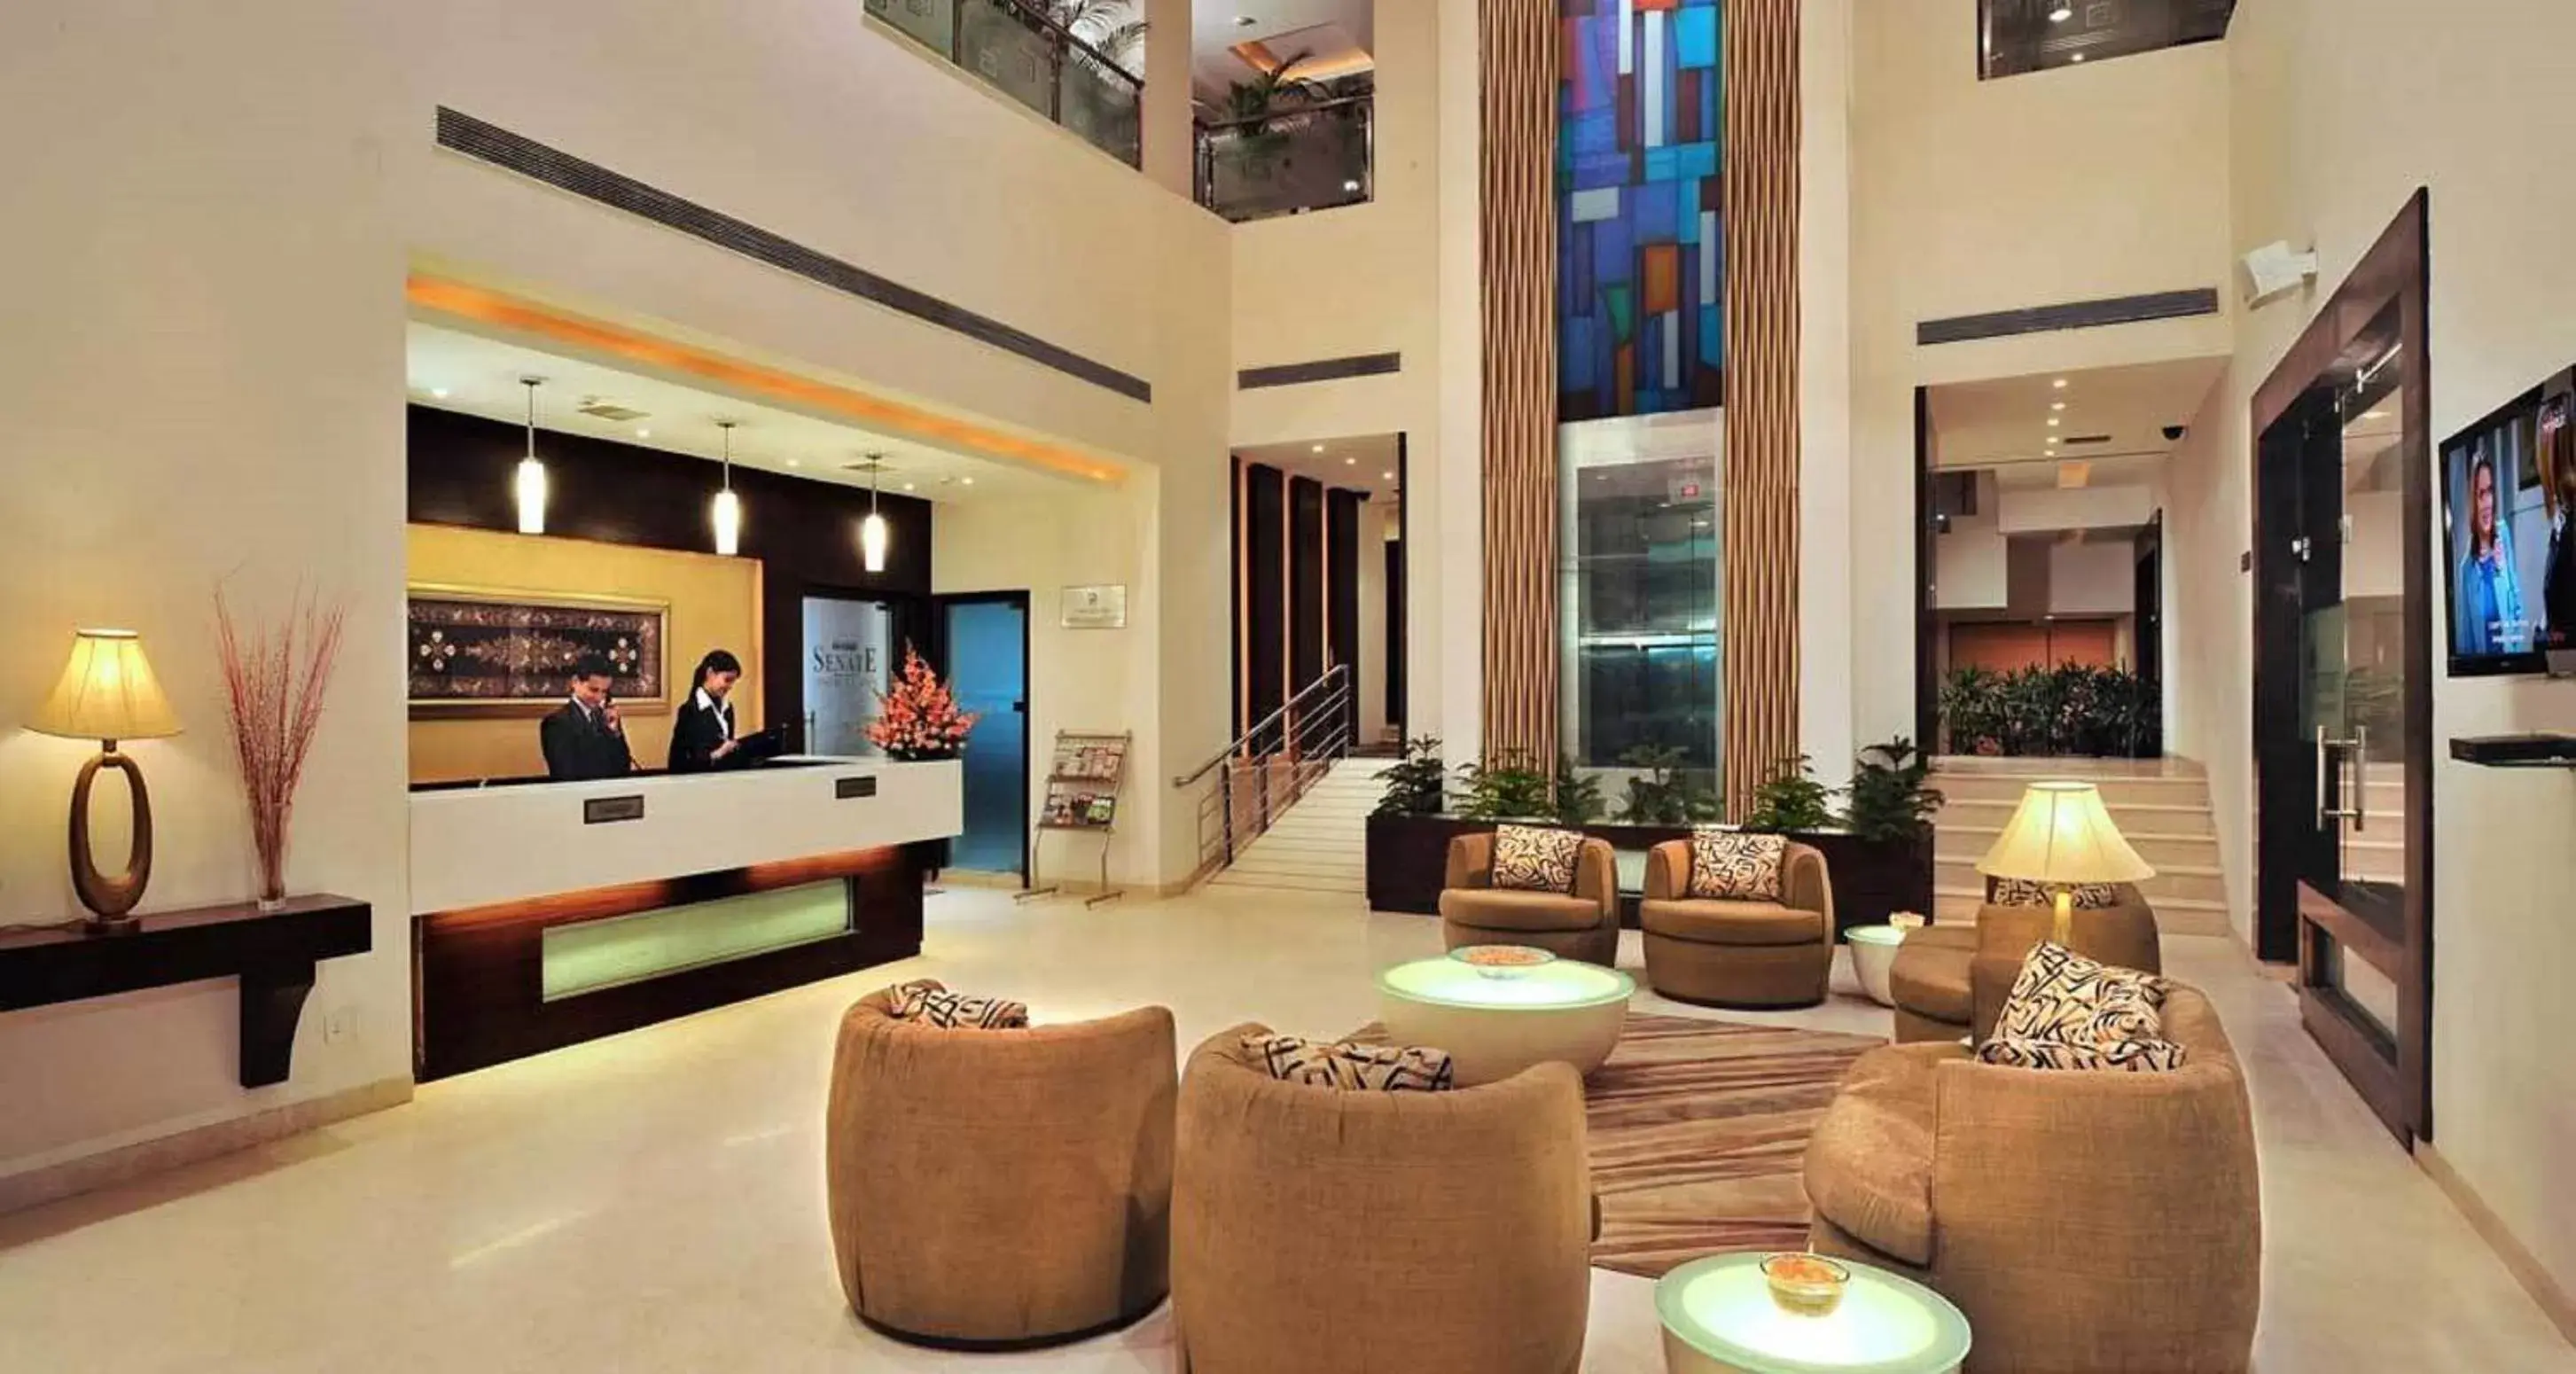 Lobby or reception, Lobby/Reception in Best Western Maryland Hotel